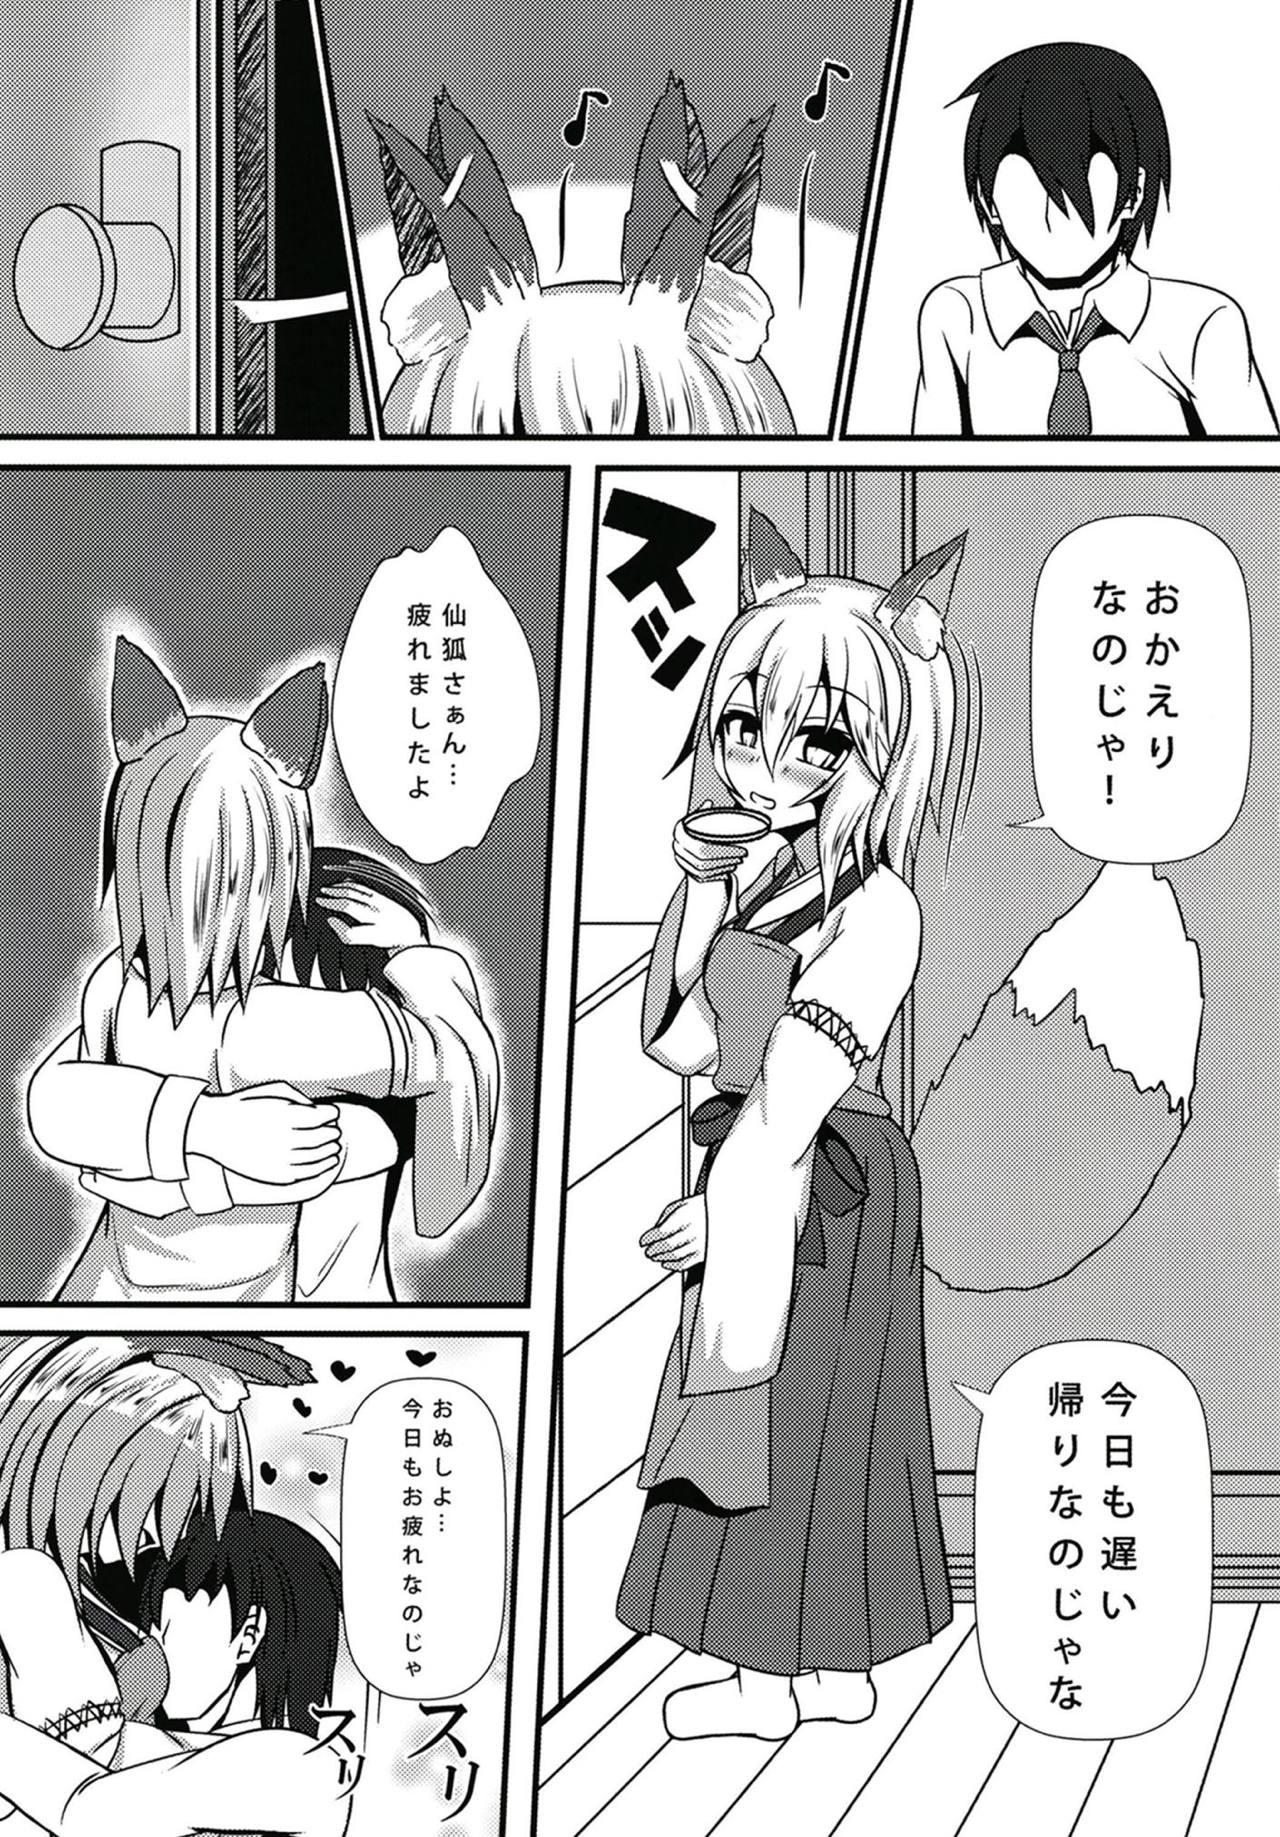 Lez Hardcore Warawa to Shiro-sama ga Amayakashite Yaru noja - Sewayaki kitsune no senko san Women - Page 2